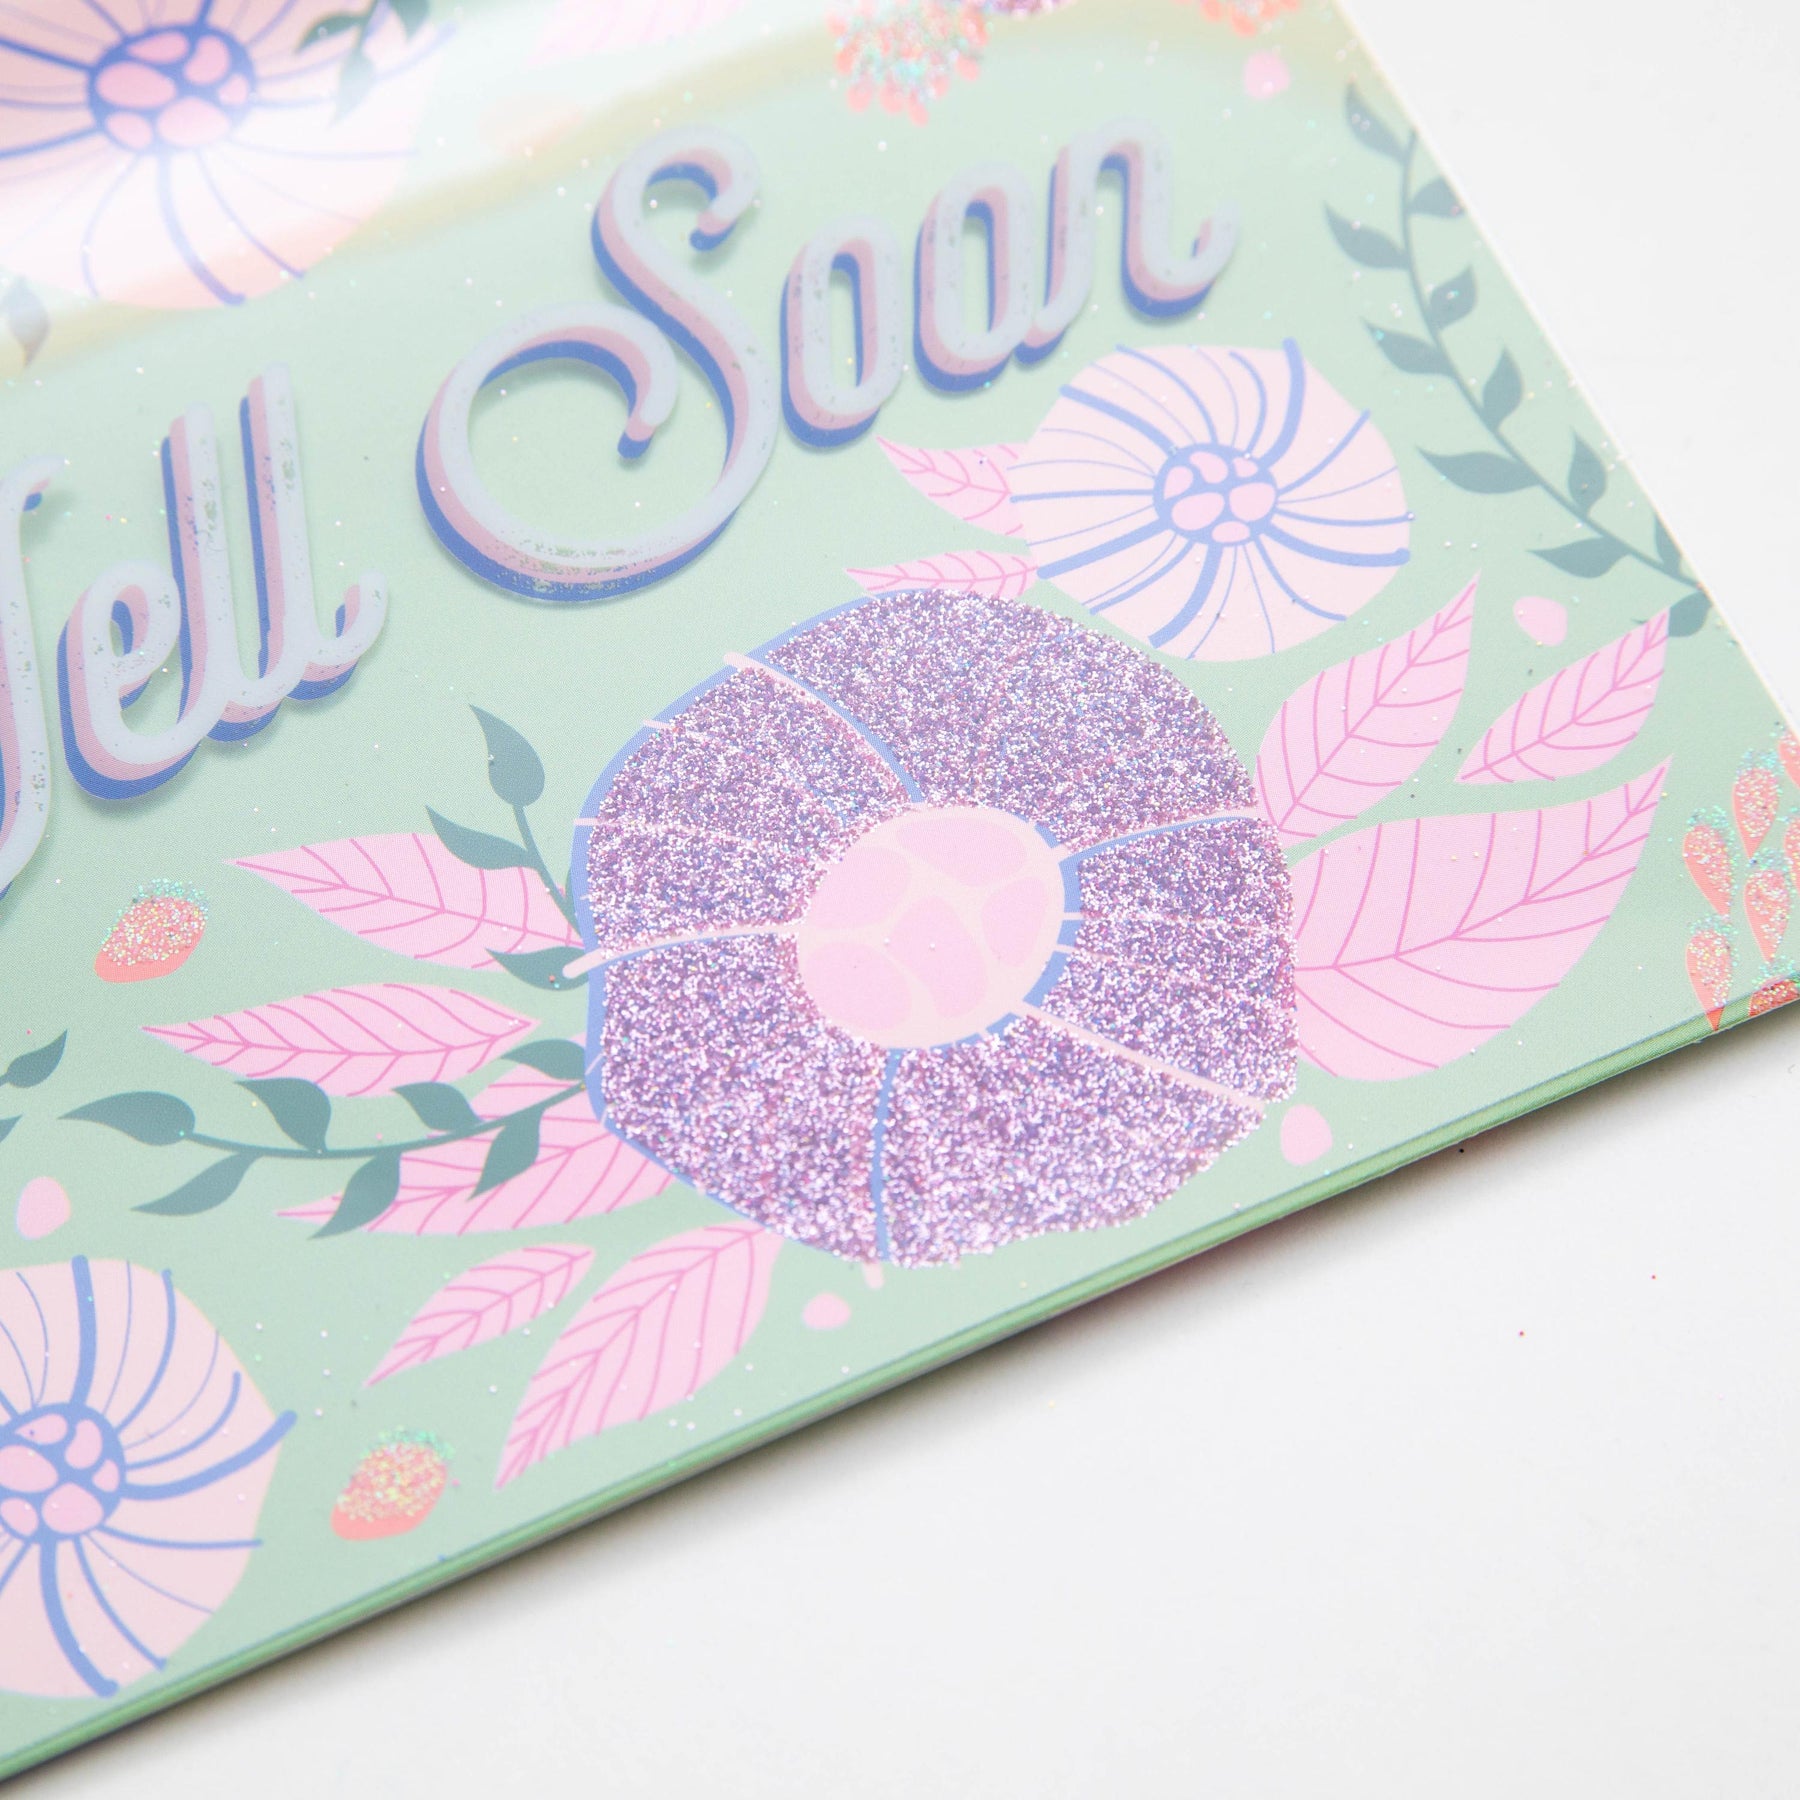 PaperCraft Handmade Get Well Soon Card – Glittery Flowers